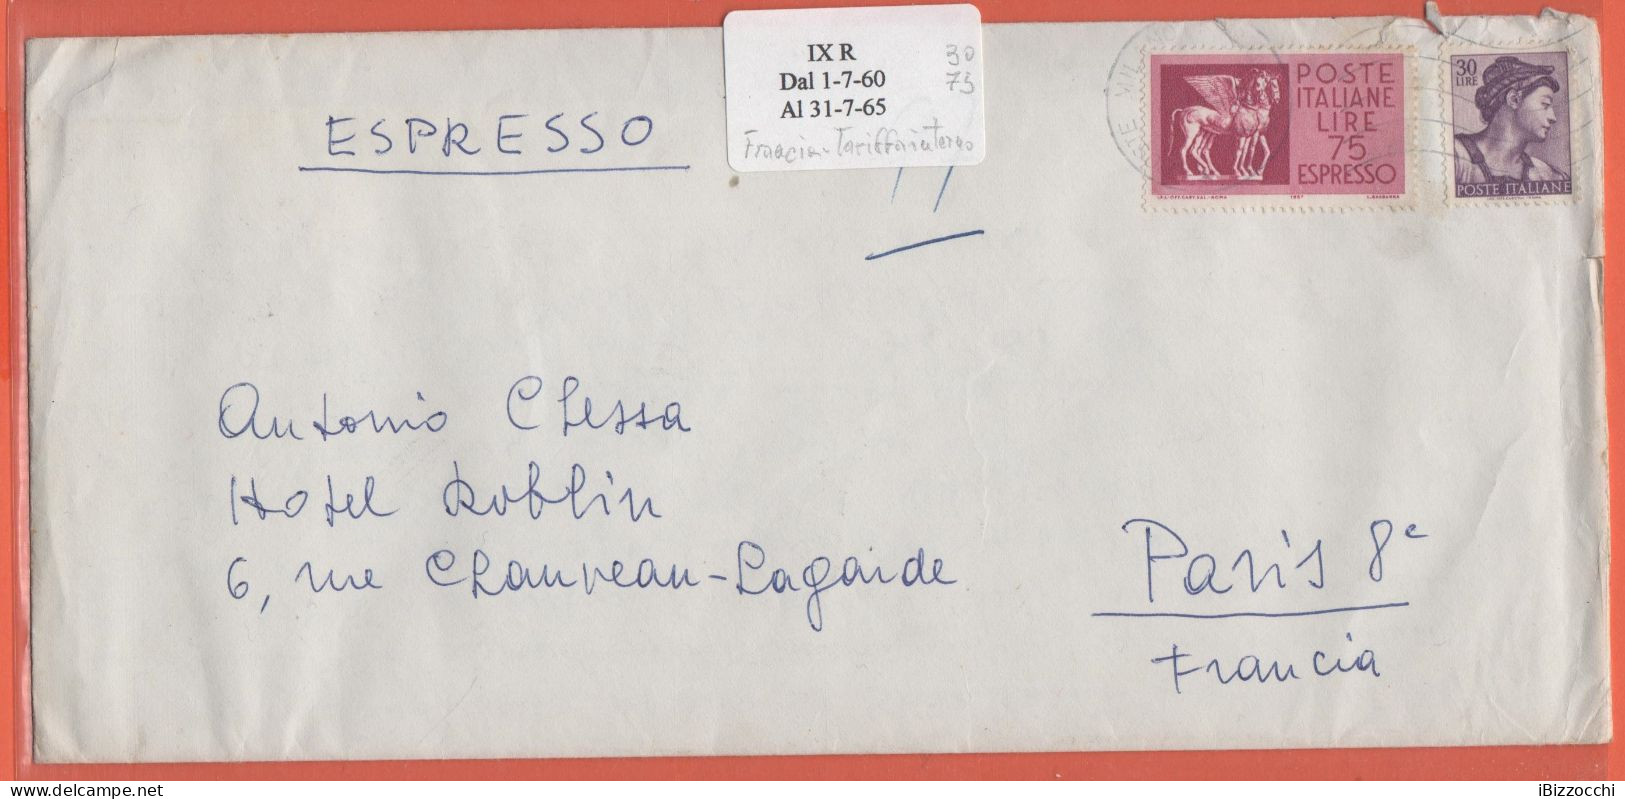 ITALIA - Storia Postale Repubblica - 1964 - 75 Espresso + 30 Michelangiolesca - Estero Con Tariffa Interna - Viaggiata D - Poste Exprèsse/pneumatique